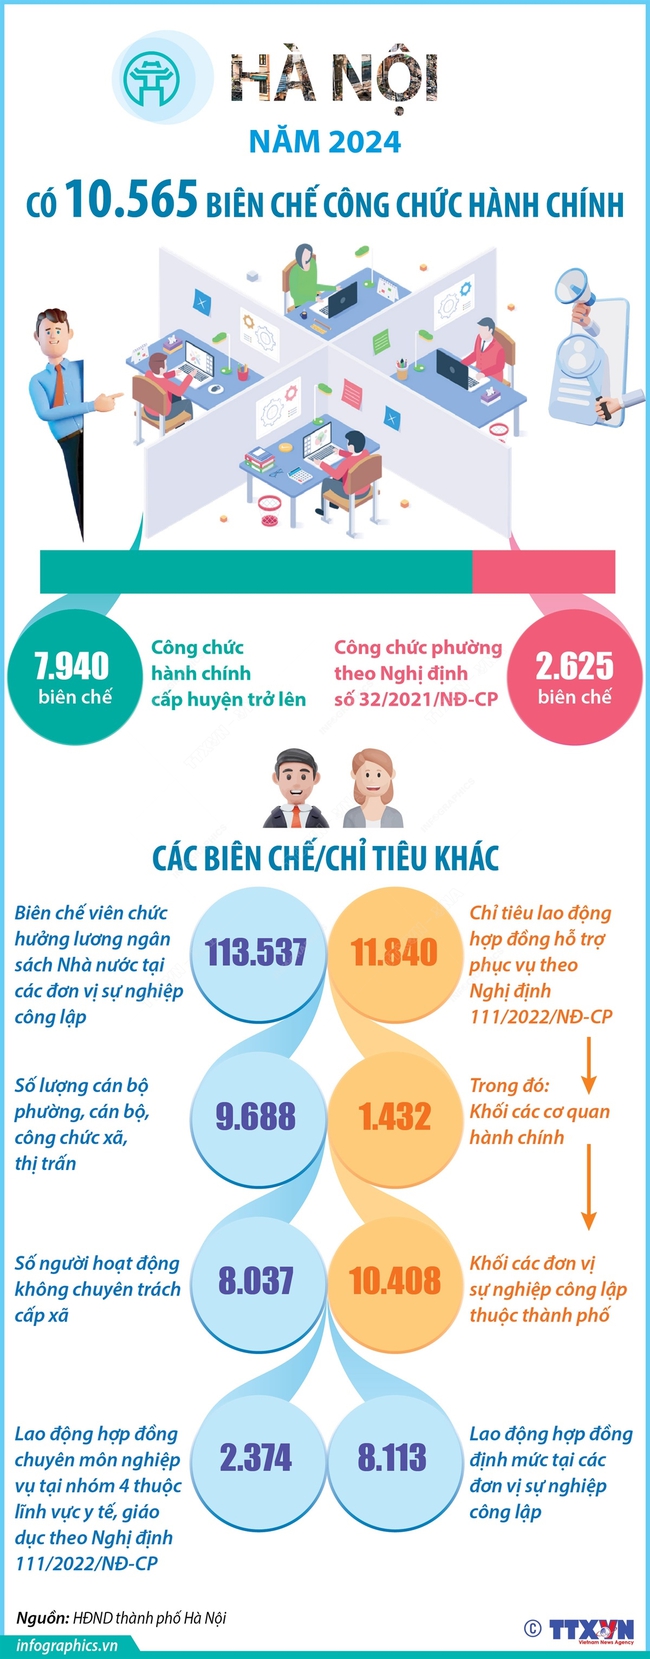 Năm 2024, Hà Nội có 10.565 biên chế công chức hành chính - Ảnh 1.